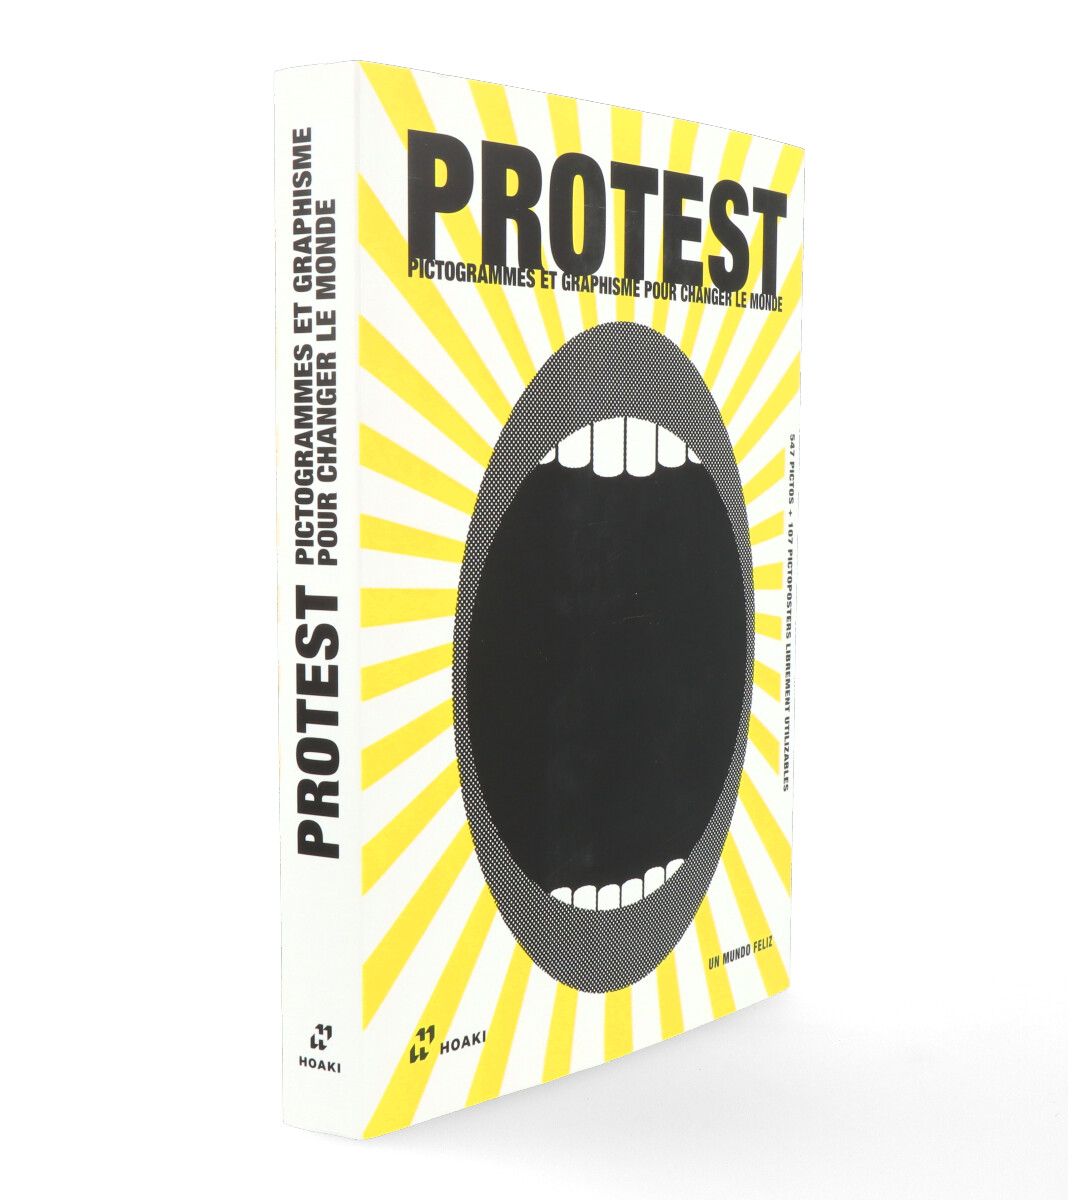 Protest Pictogrammes : Graphisme pour changer le monde